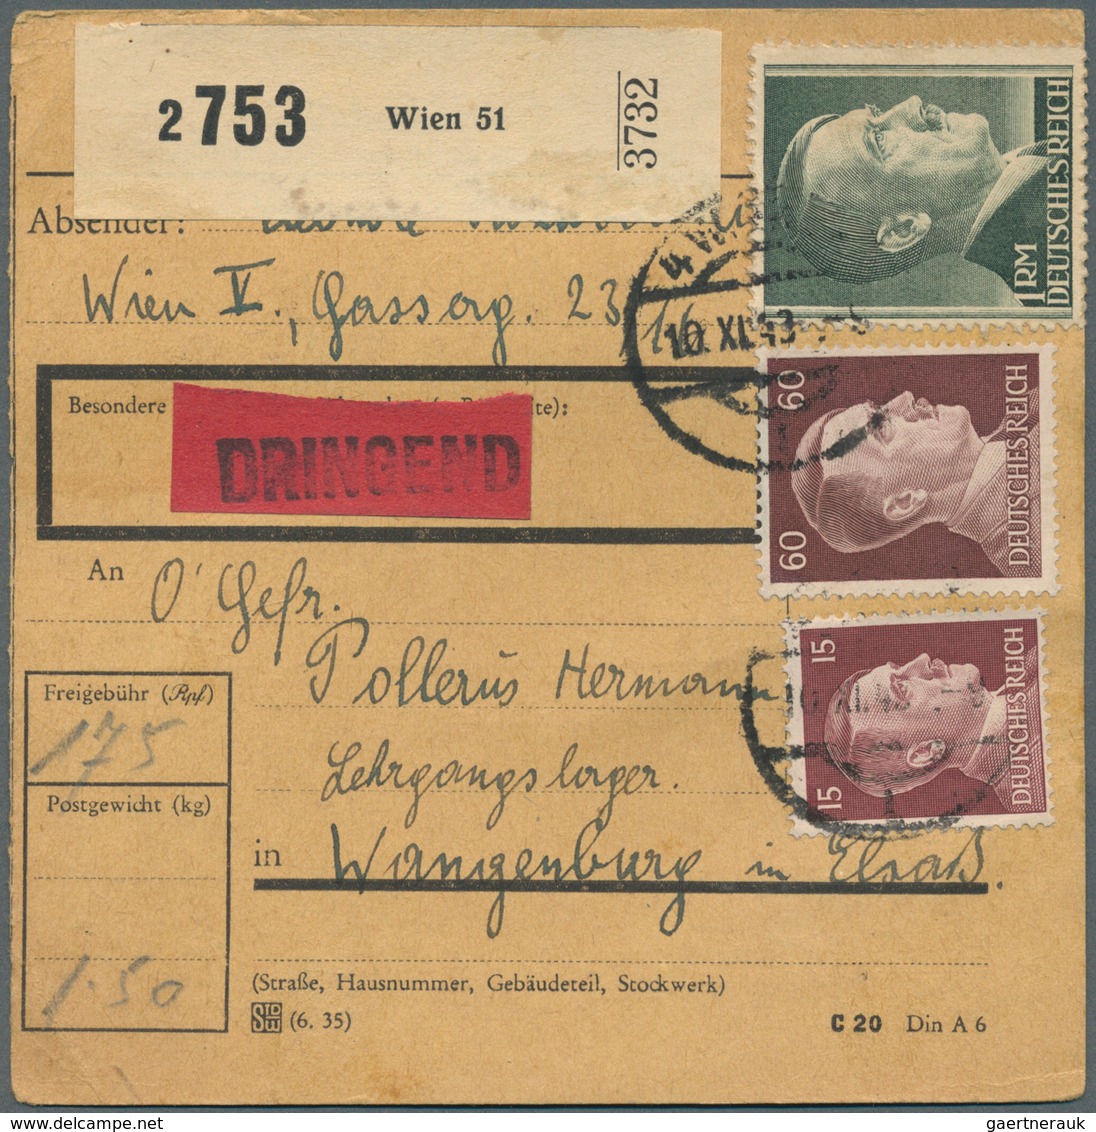 Deutsches Reich - 3. Reich: 1933-1945, Posten mit rund 450 Briefen und Belegen, dabei Flugpost, Dien